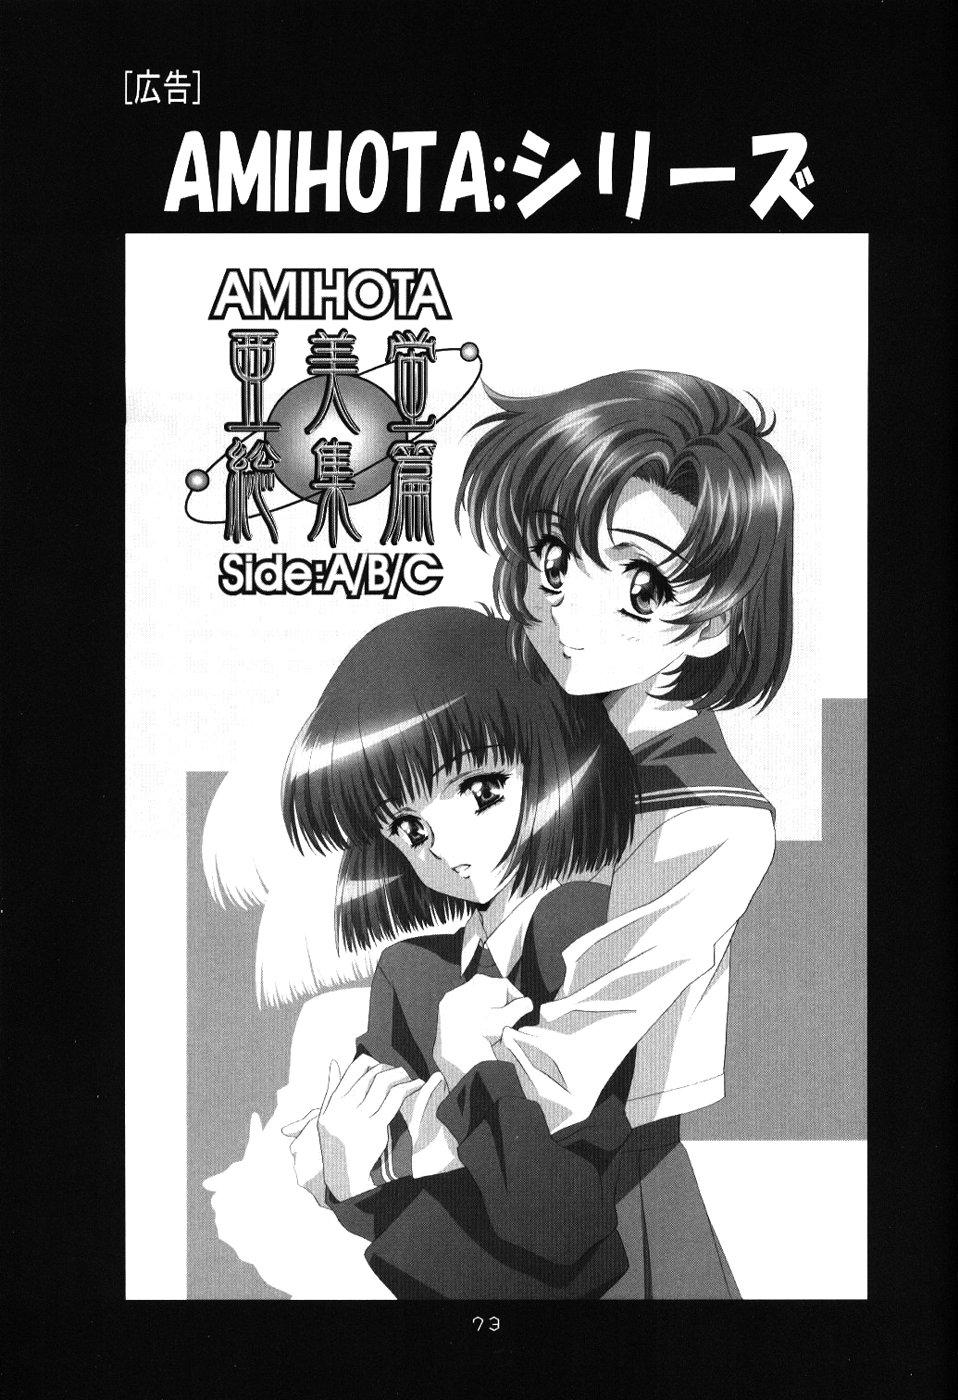 Rico Ayanami Club 4 - Neon genesis evangelion Keroro gunsou El cazador de la bruja Wet Pussy - Page 72